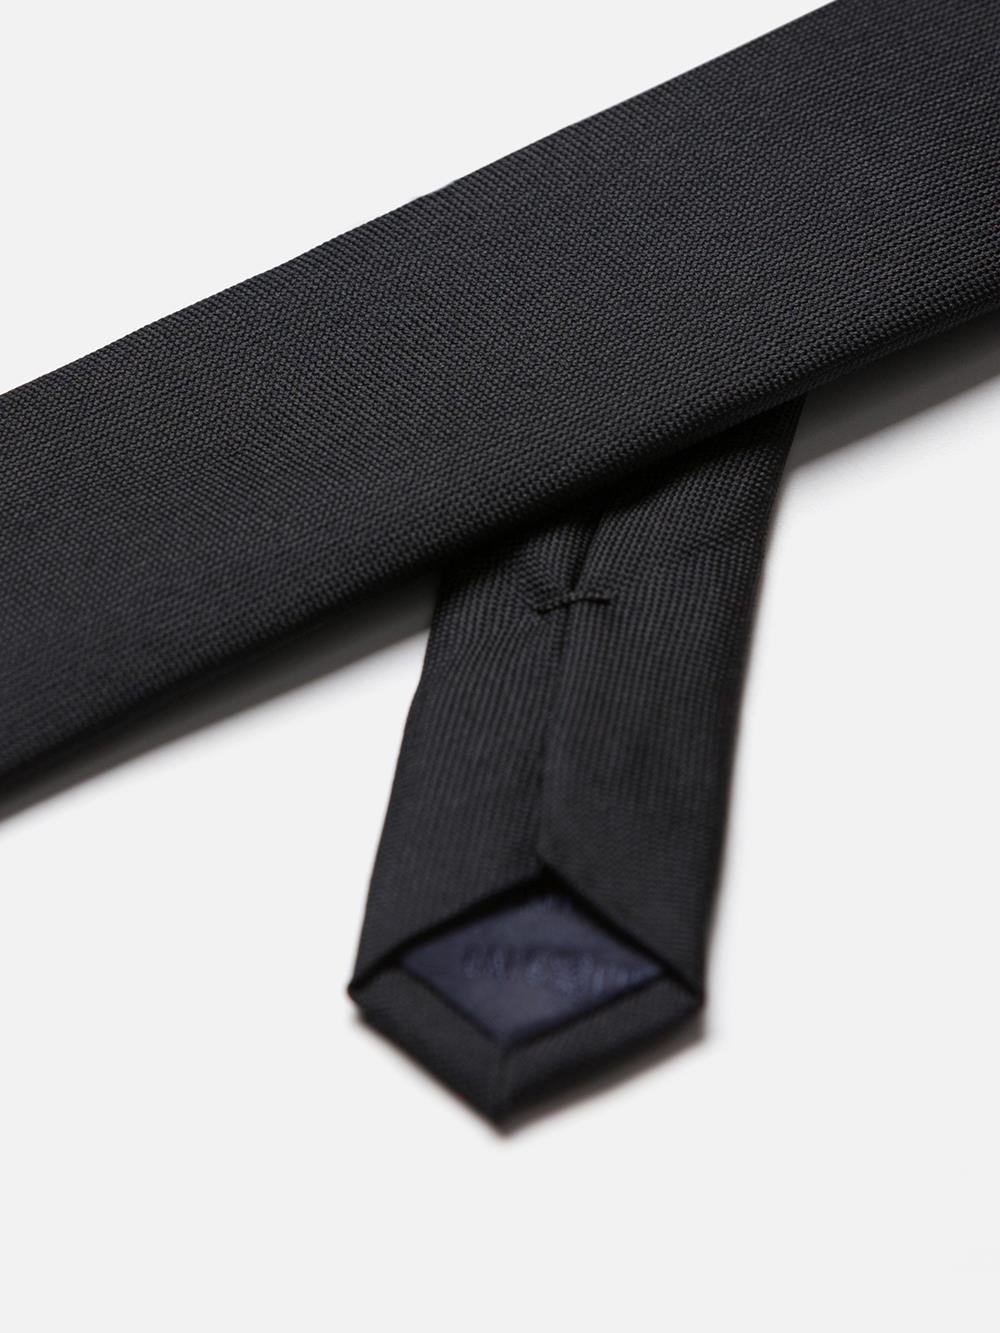 Cravate slim en micro natté de soie noire